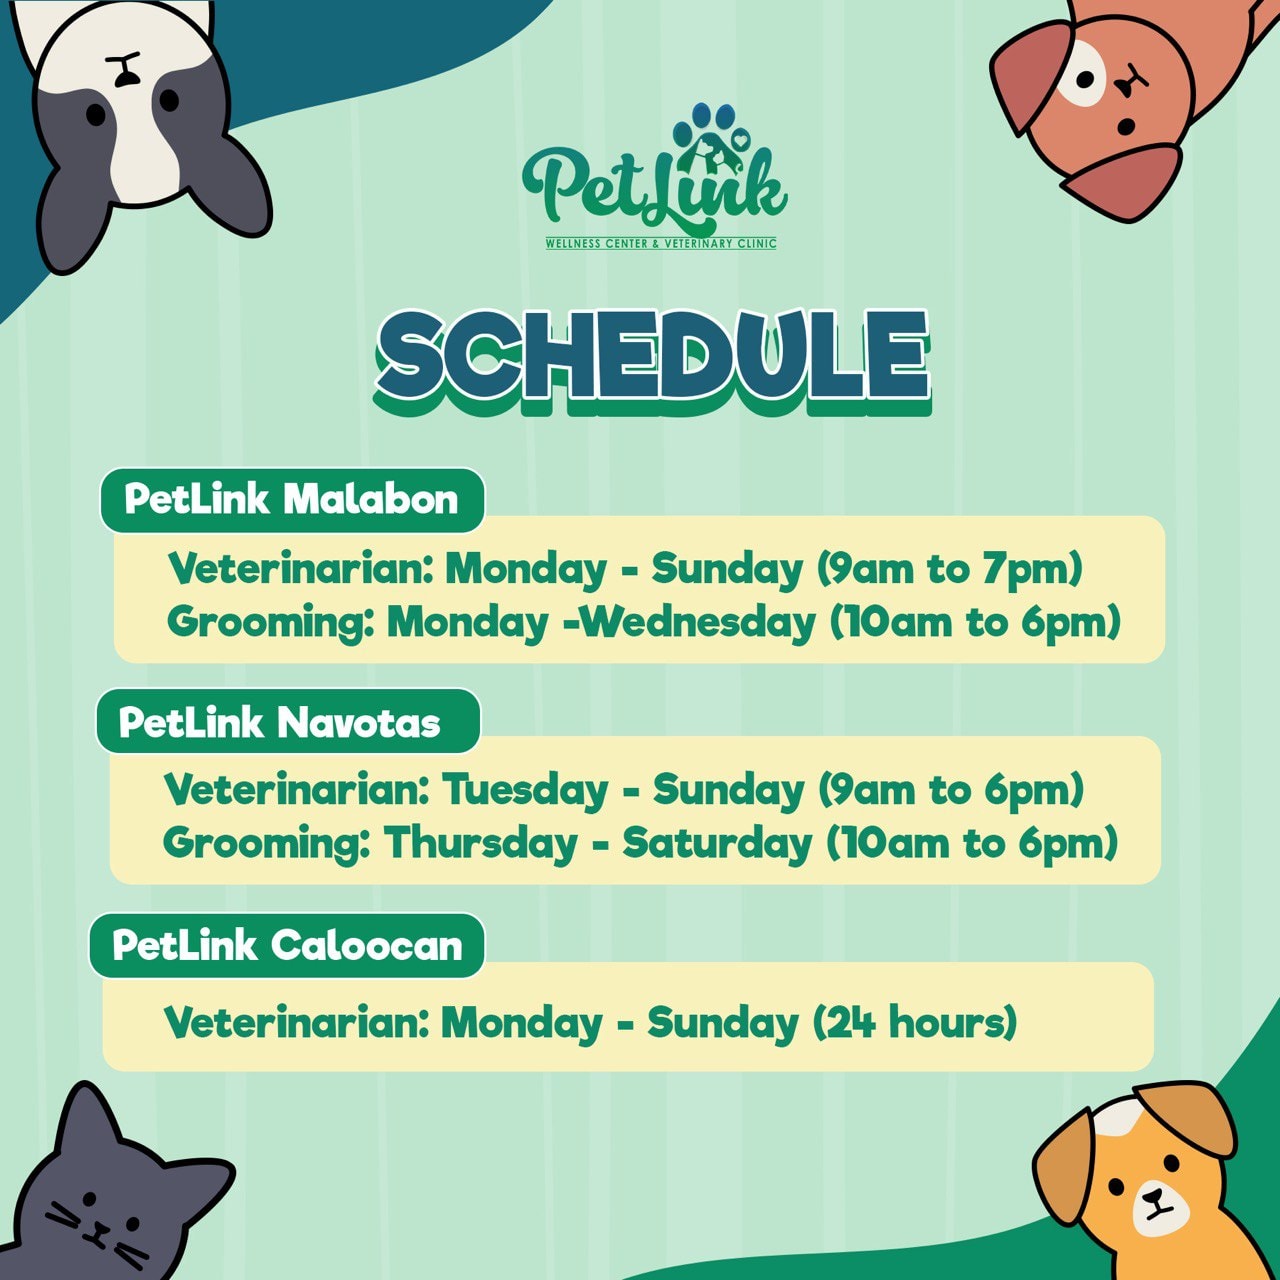 Schedule of PetLink's branches